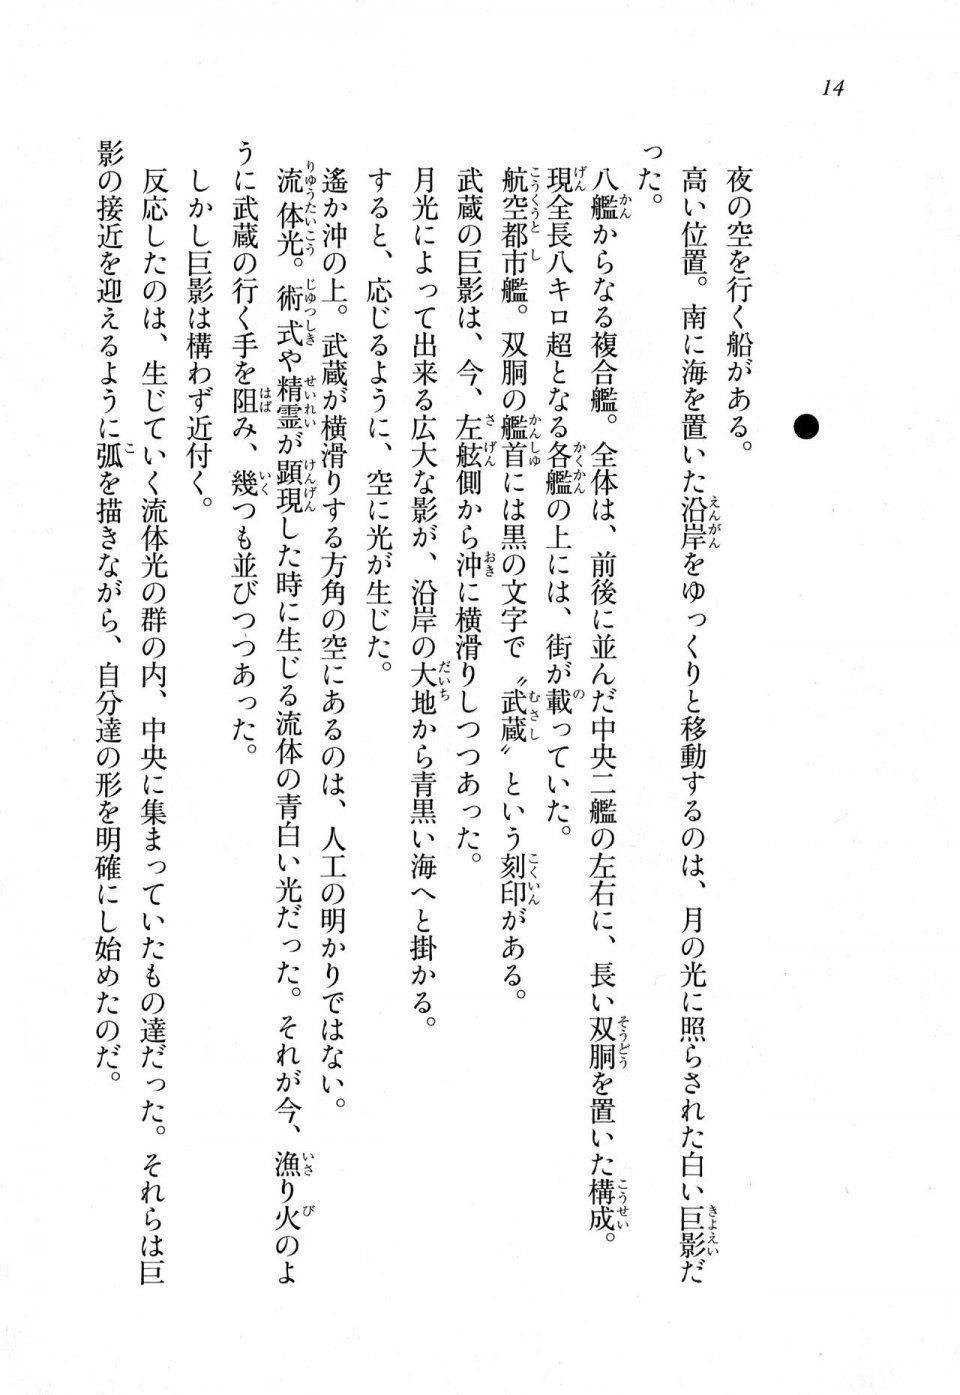 Kyoukai Senjou no Horizon LN Sidestory Vol 1 - Photo #13